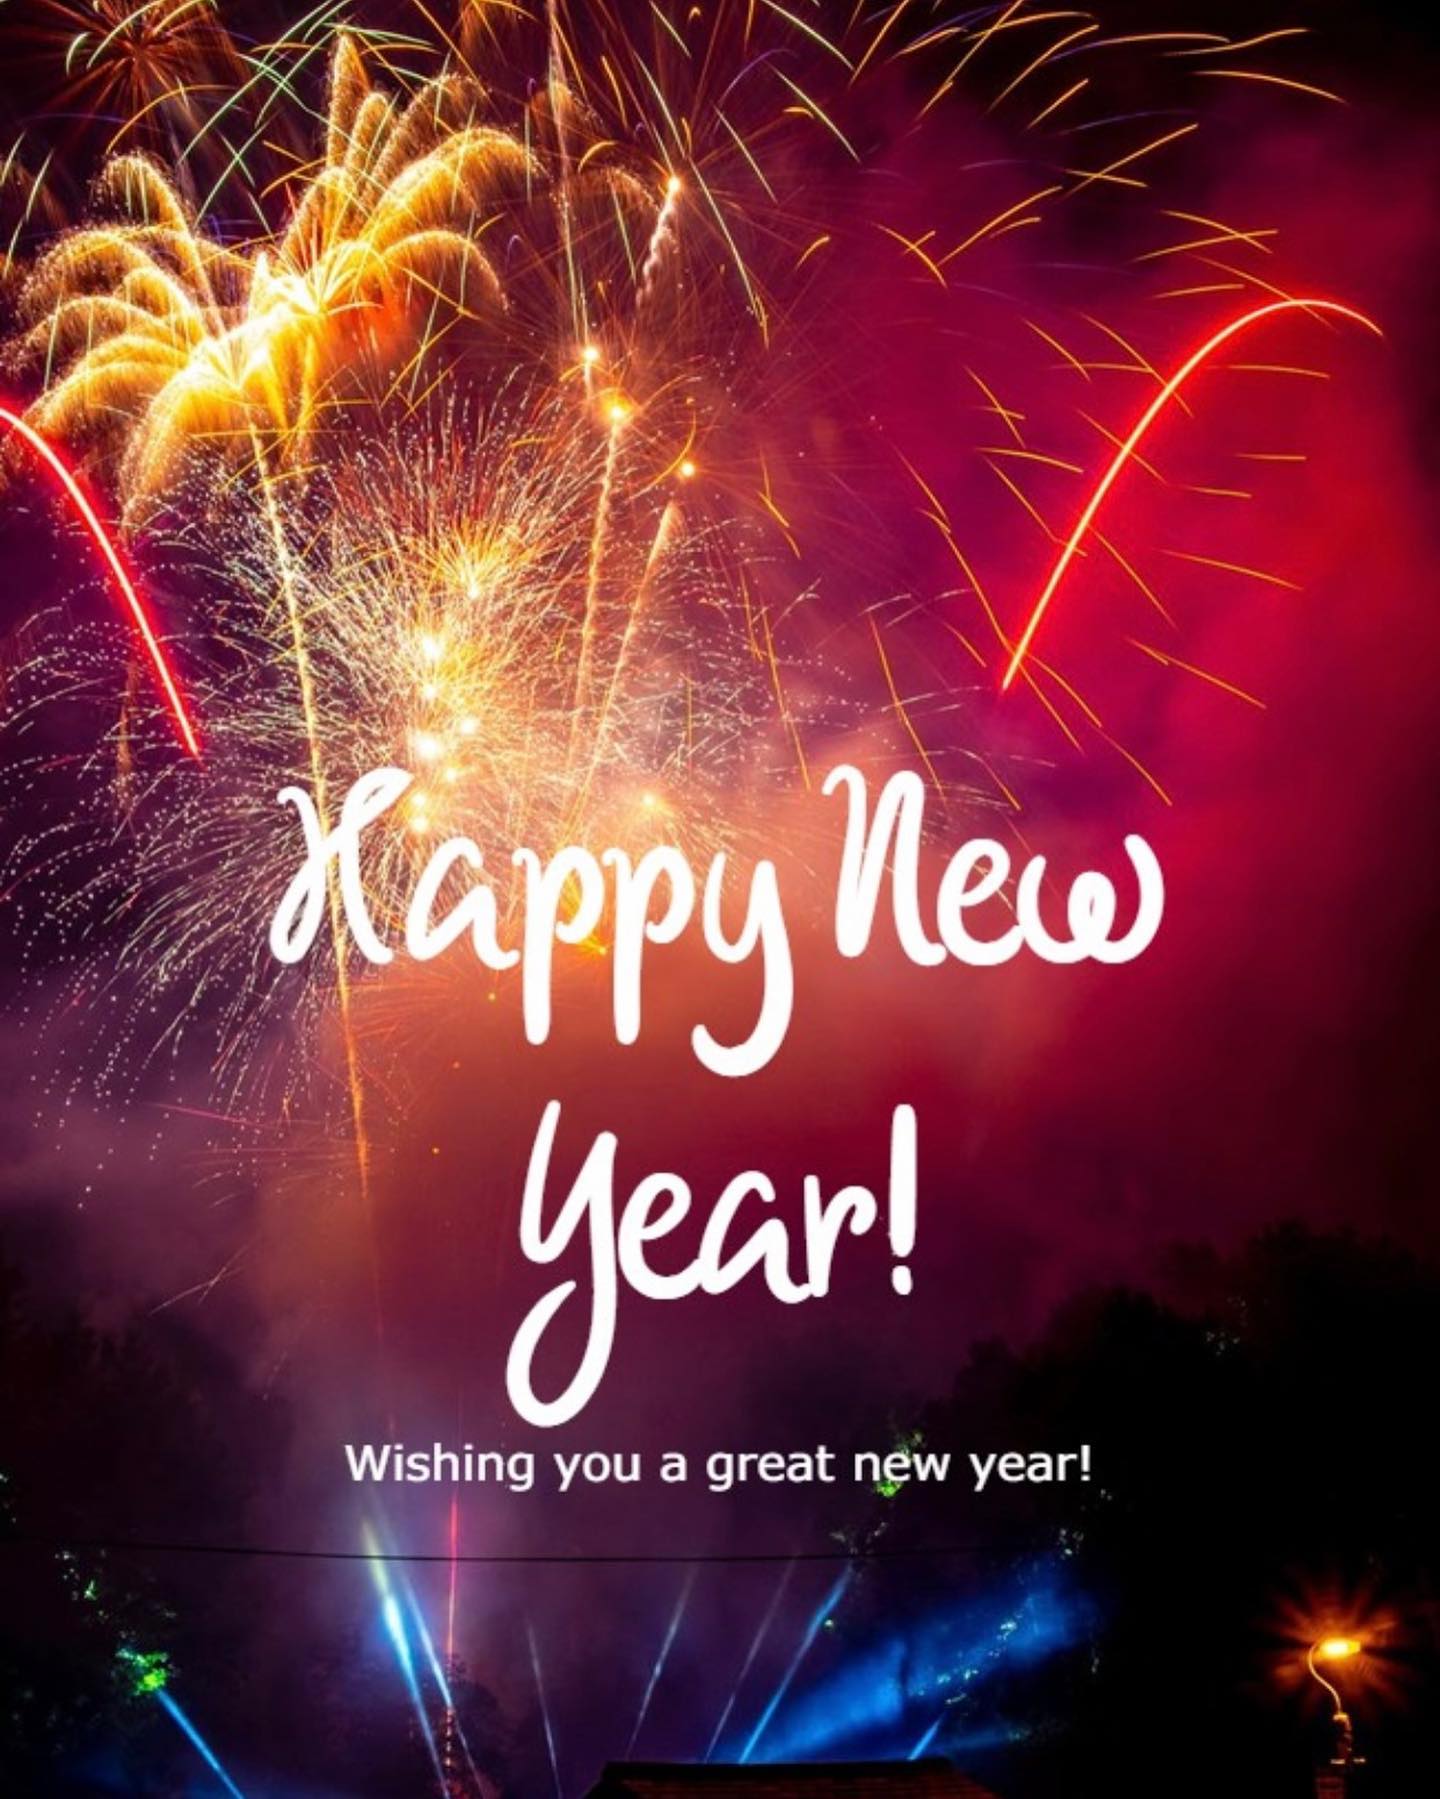 #Happy new year!!!!#mariatsaousi_com #